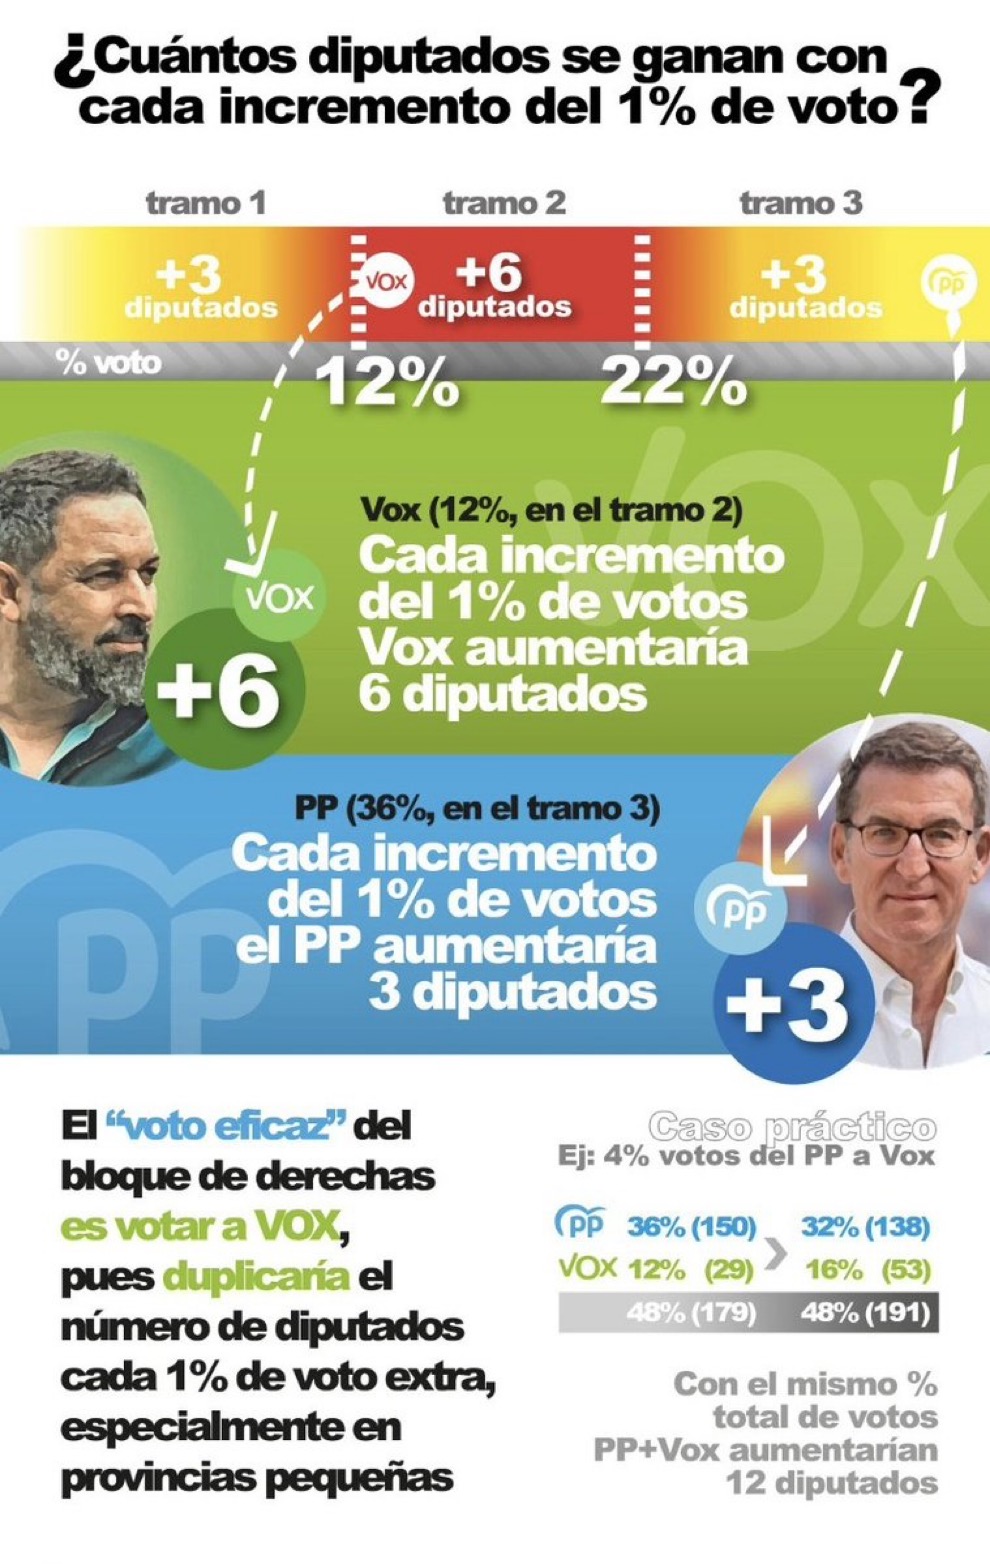 Jornada electoral en España hoy. - Página 2 Img_5610